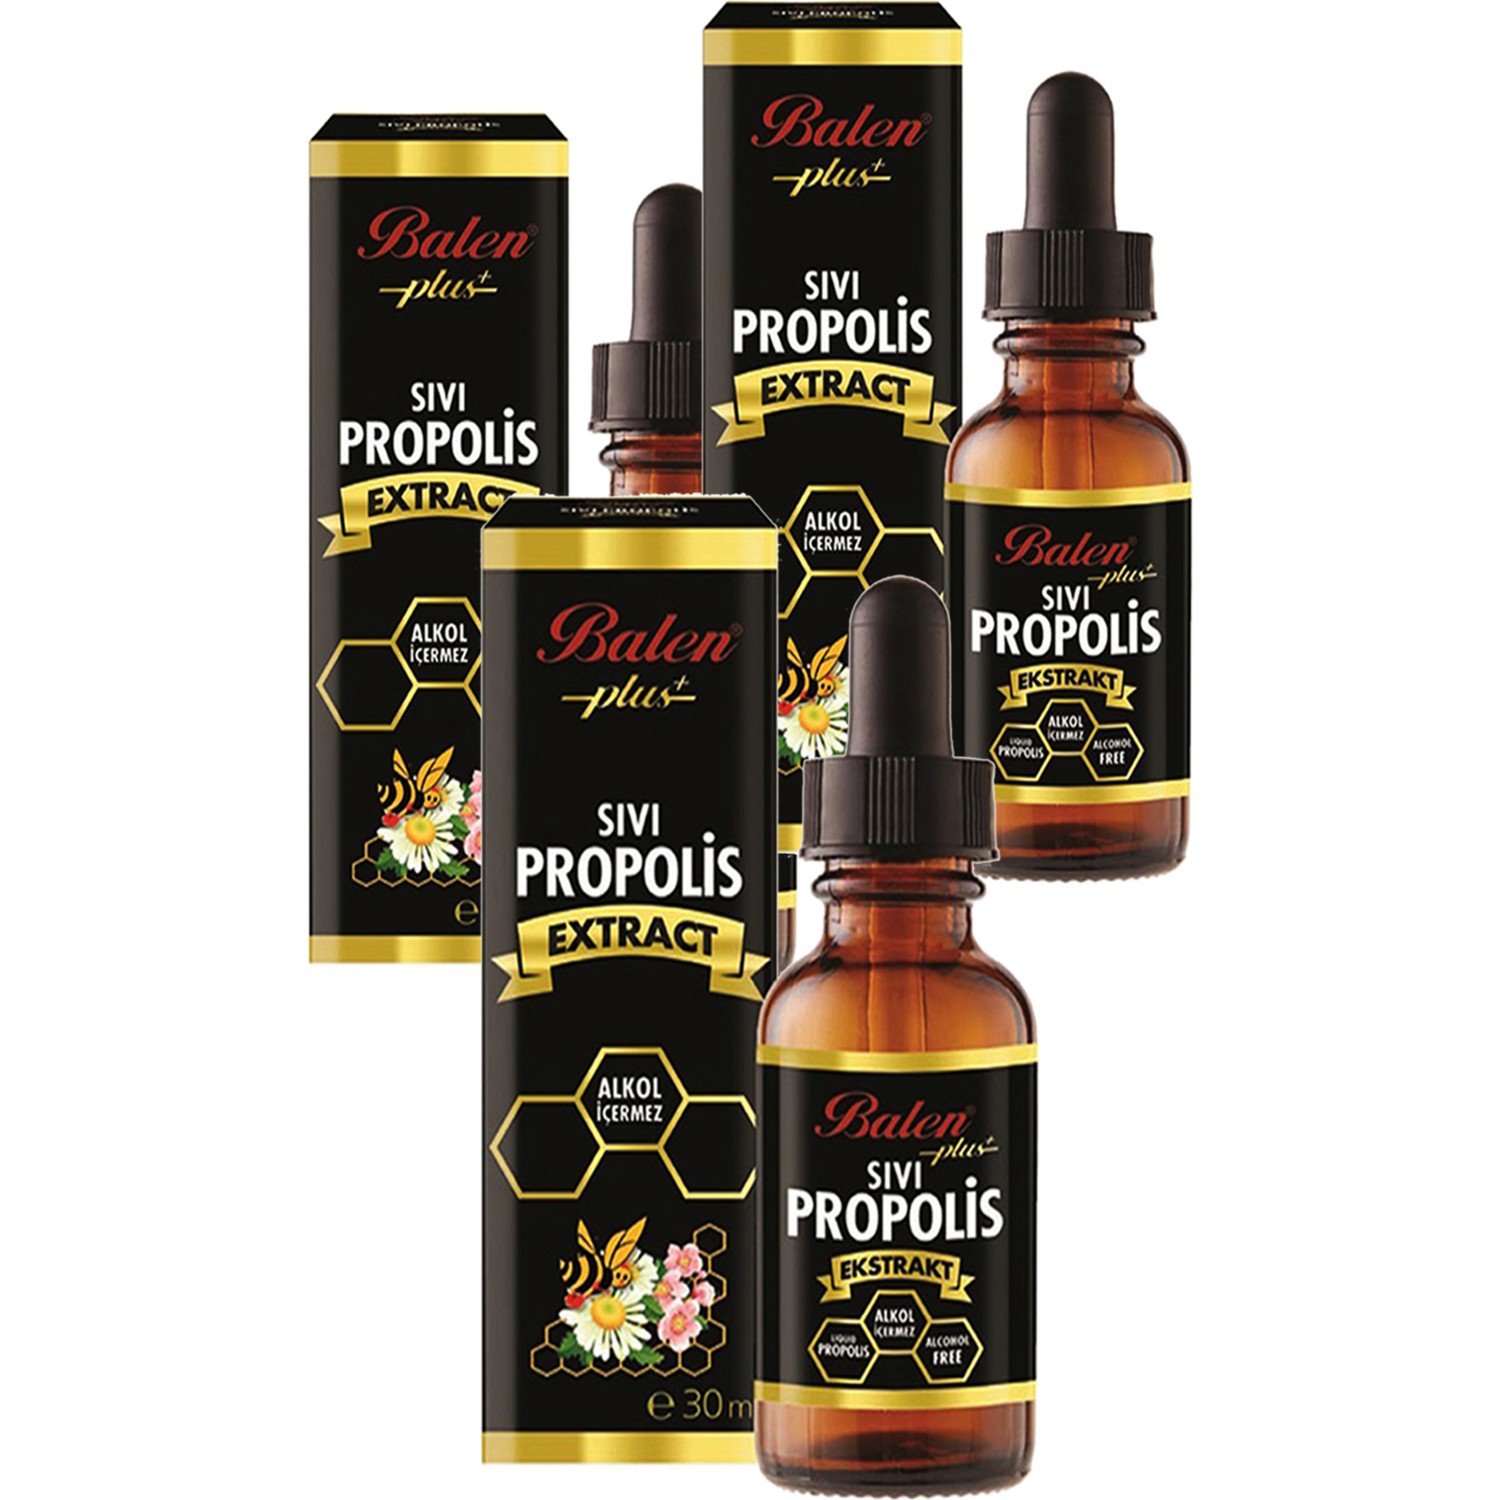 Жидкий экстракт прополиса Balen, 3 упаковки по 30 мл cosrx cream propolis light propolis honey royal jelly extract 2 19 fl oz 65 ml